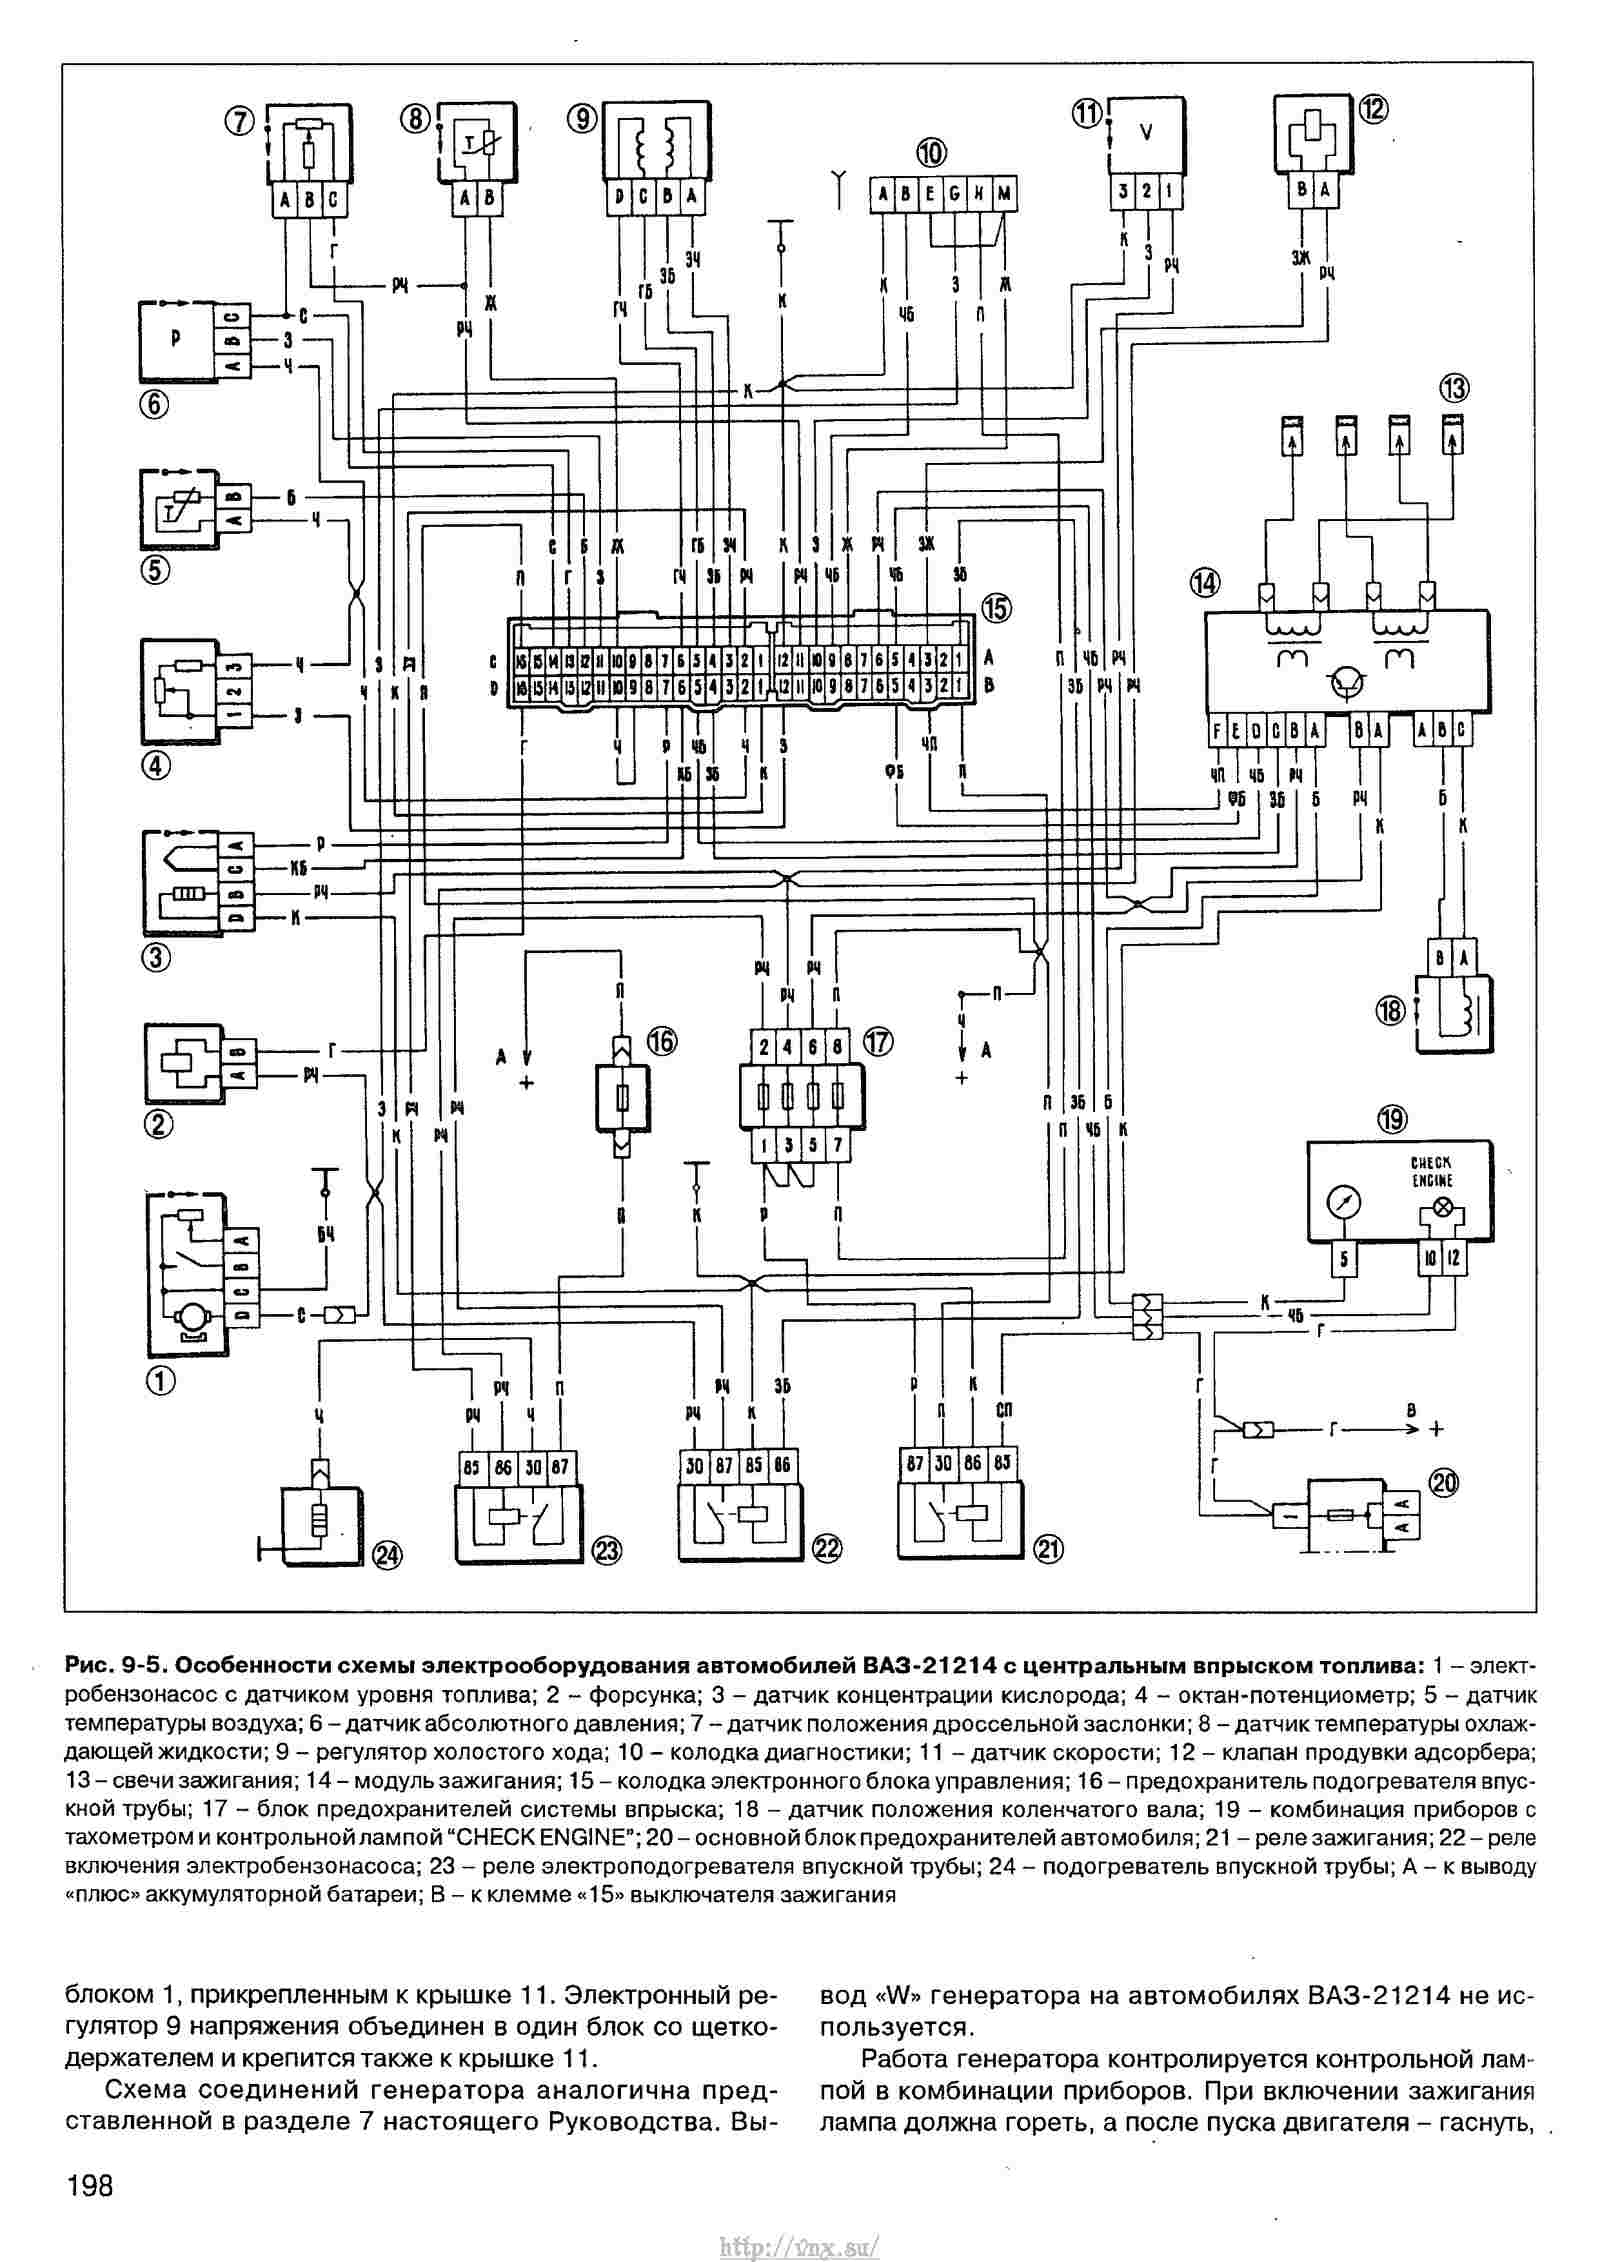 Электрическая схема ваз 21214 (21213, 2121 и 2131) нива инжектор и карбюратор с описанием проводки